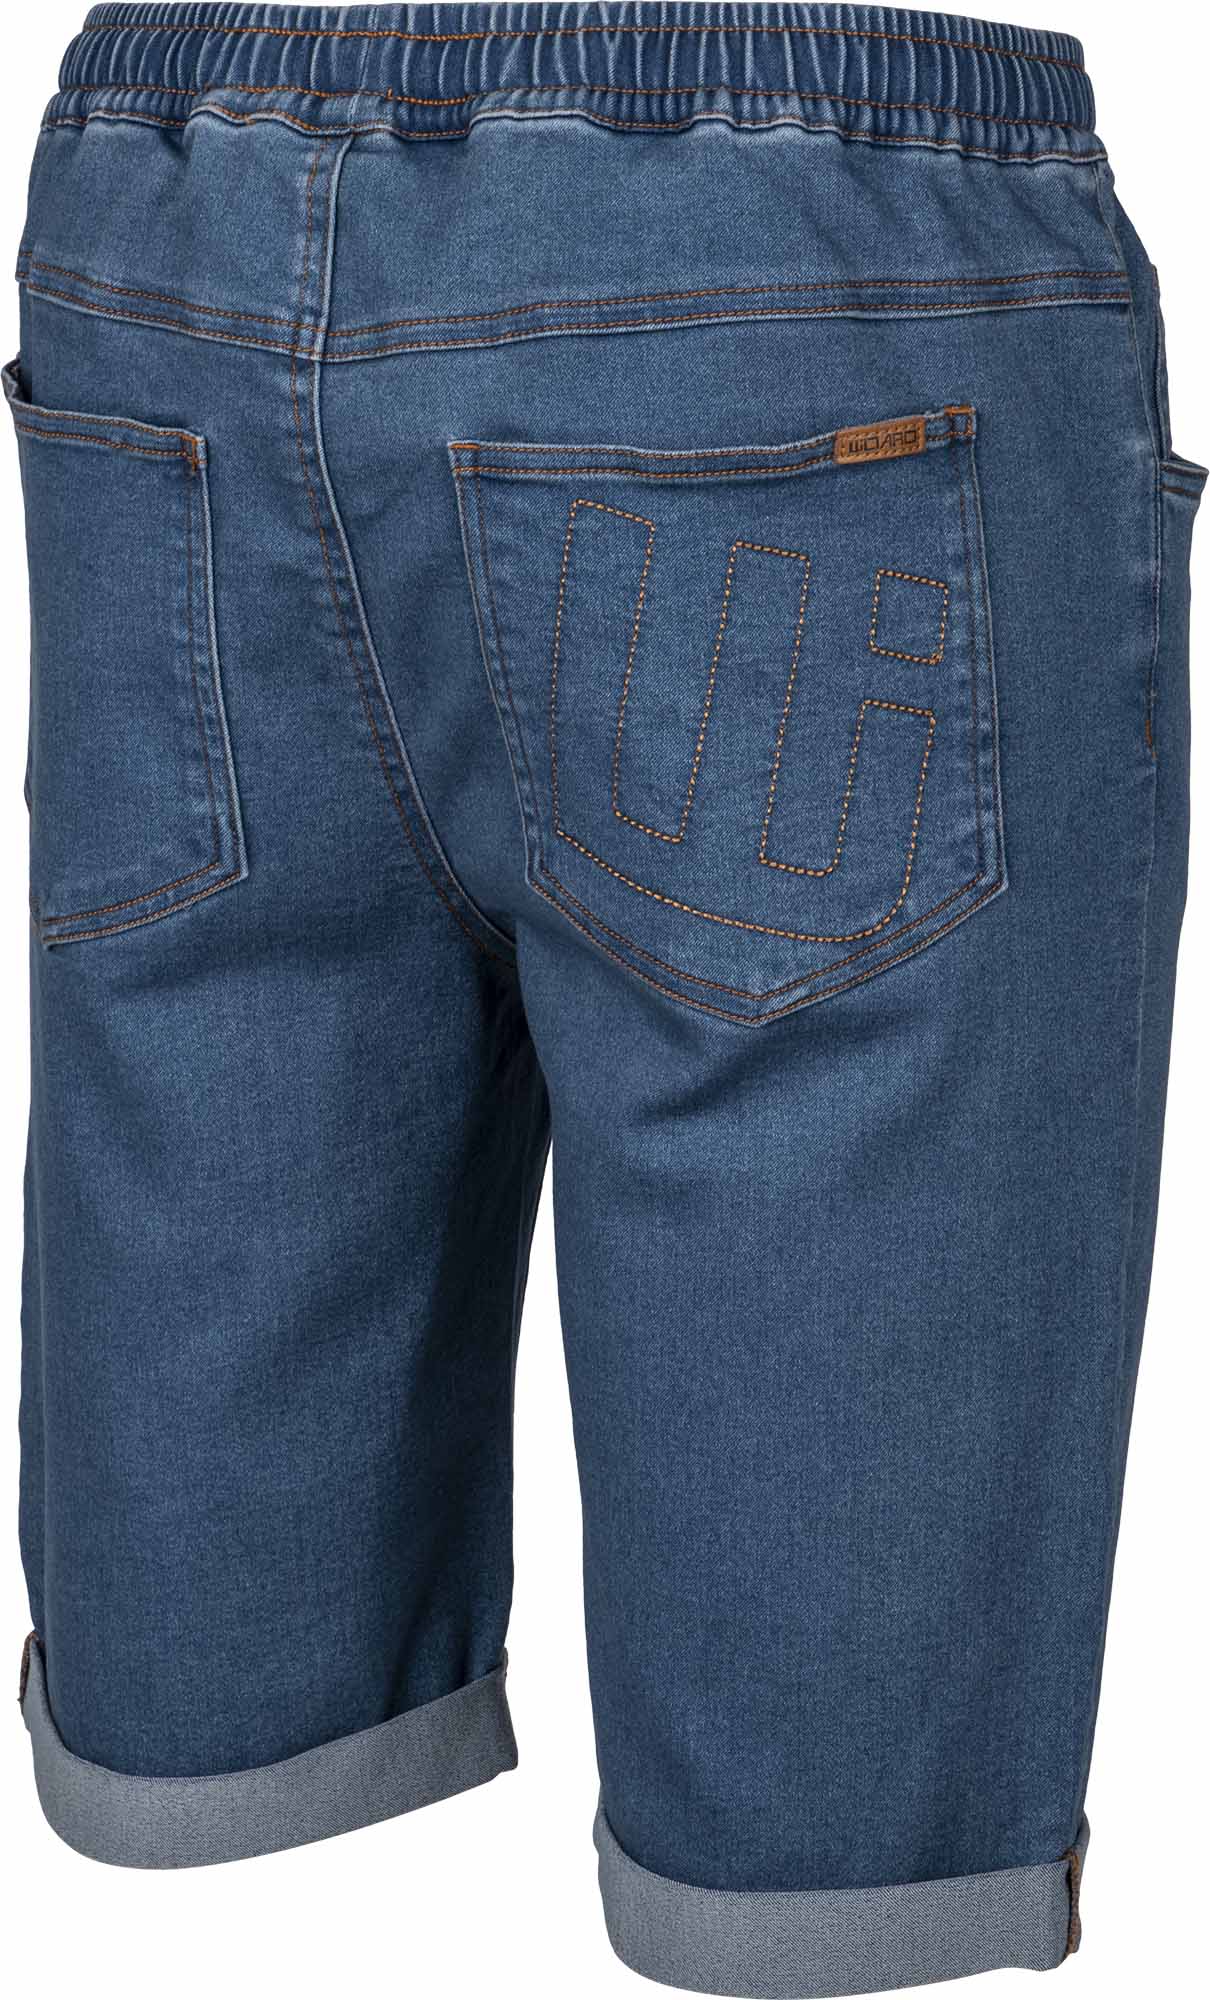 Pánské šortky džínového vzhledu